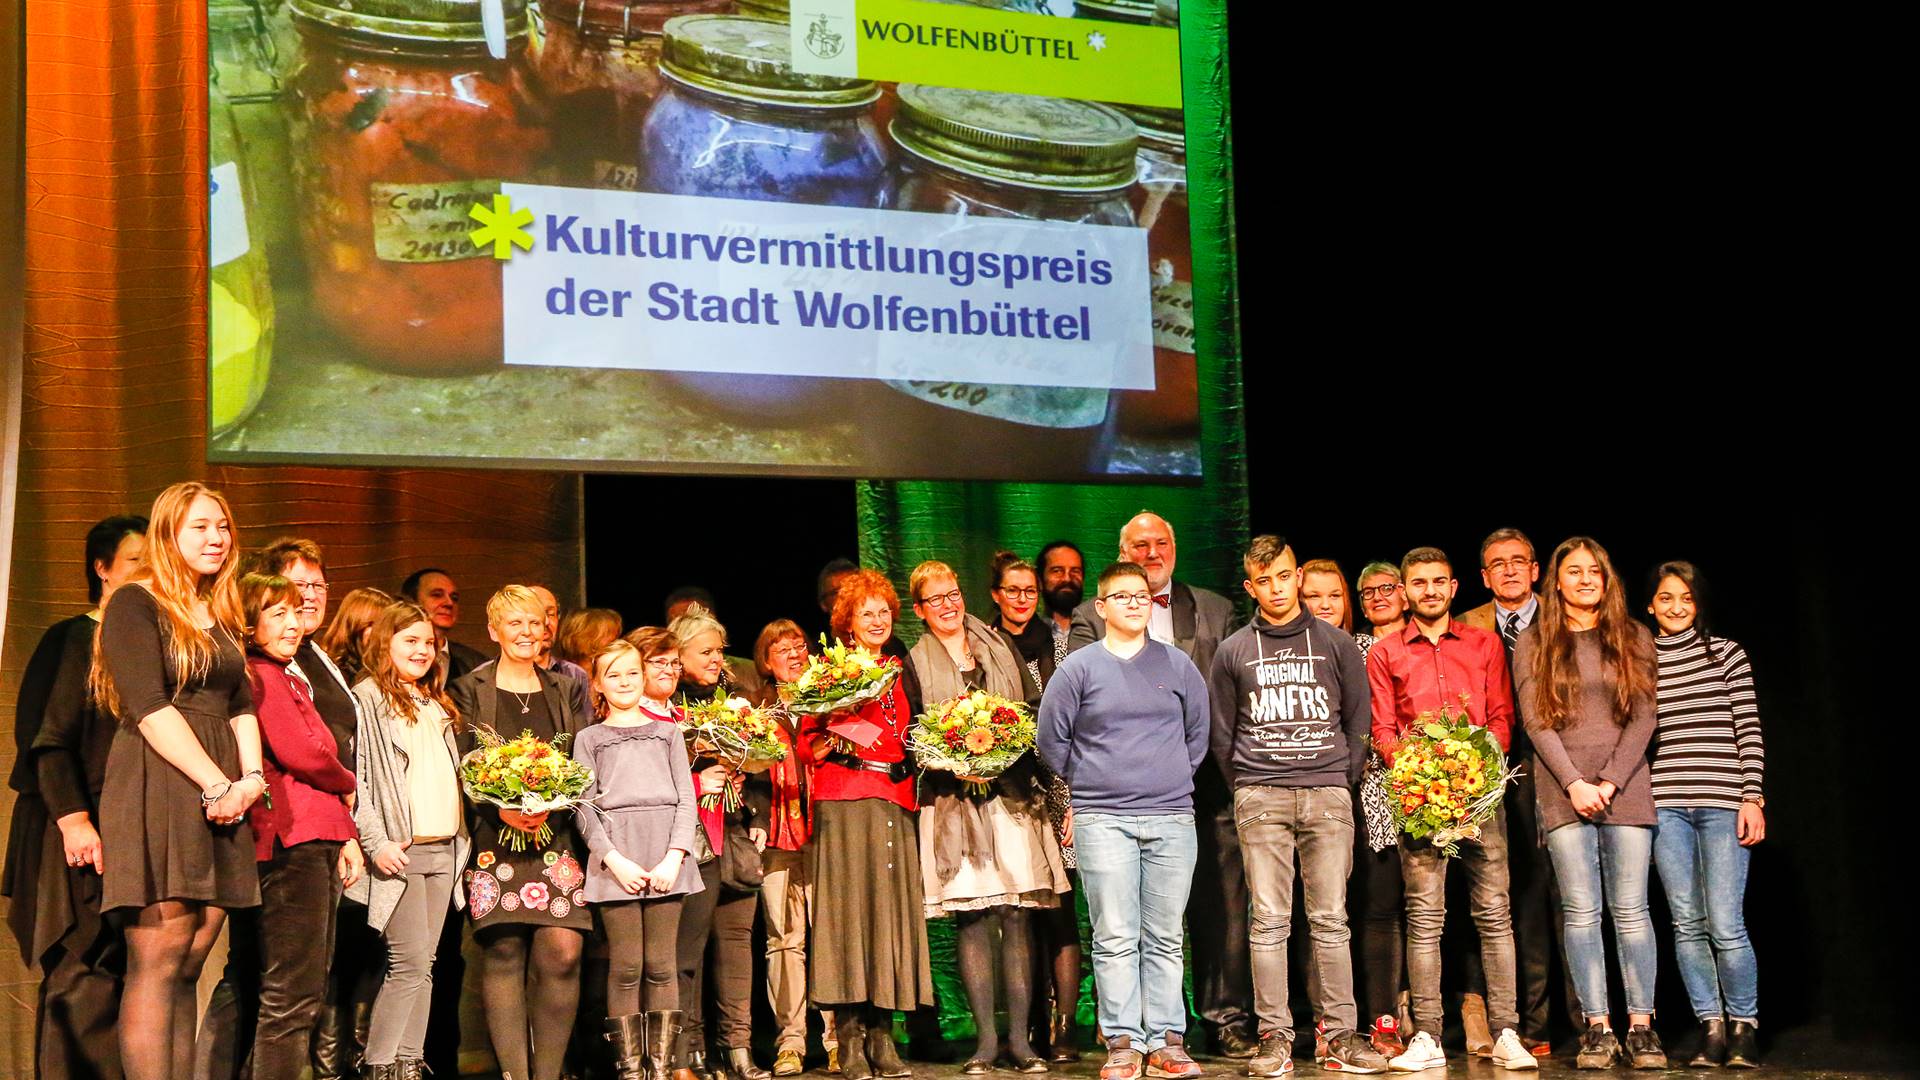 Gruppenbild, im Hintergrund ein großes Plakat mit der Aufschrift "Kulturvermittlungspreis der Stadt Wolfenbüttel".